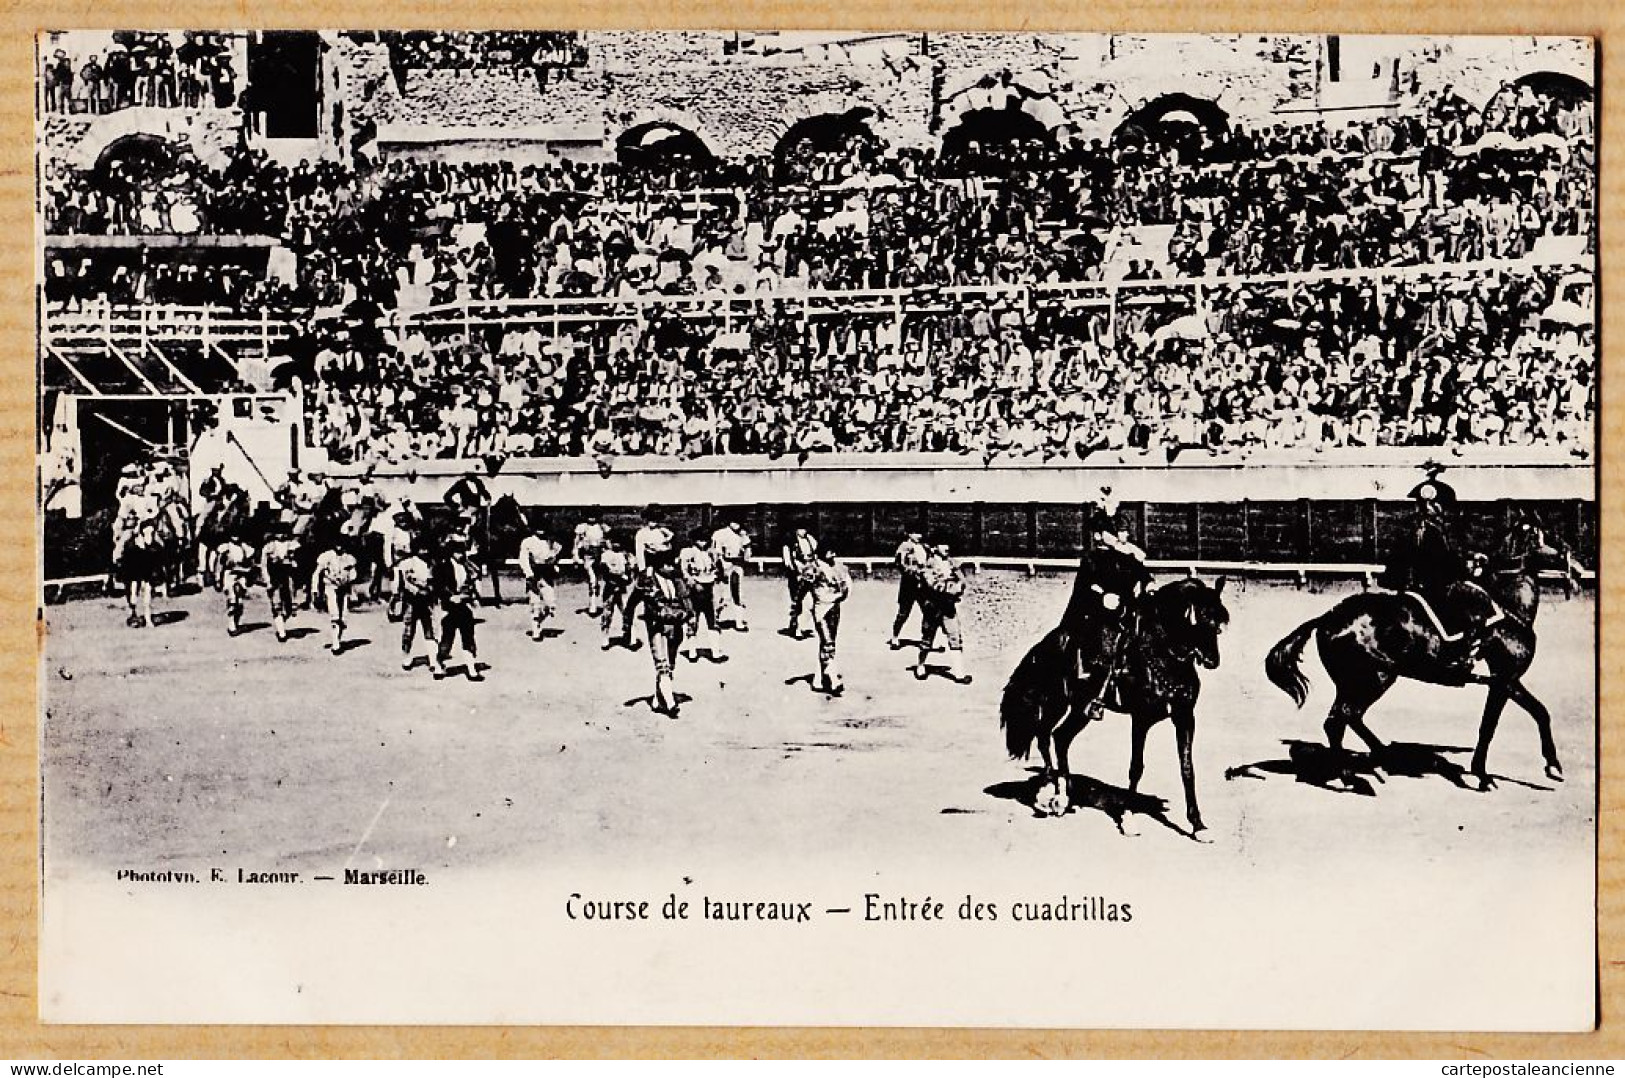 09691 / ⭐ NÎMES 30-Gard Course De Taureaux Entrée Des Cuadrillas Corrida 1910s- Phototypie LACOUR Marseille - Nîmes